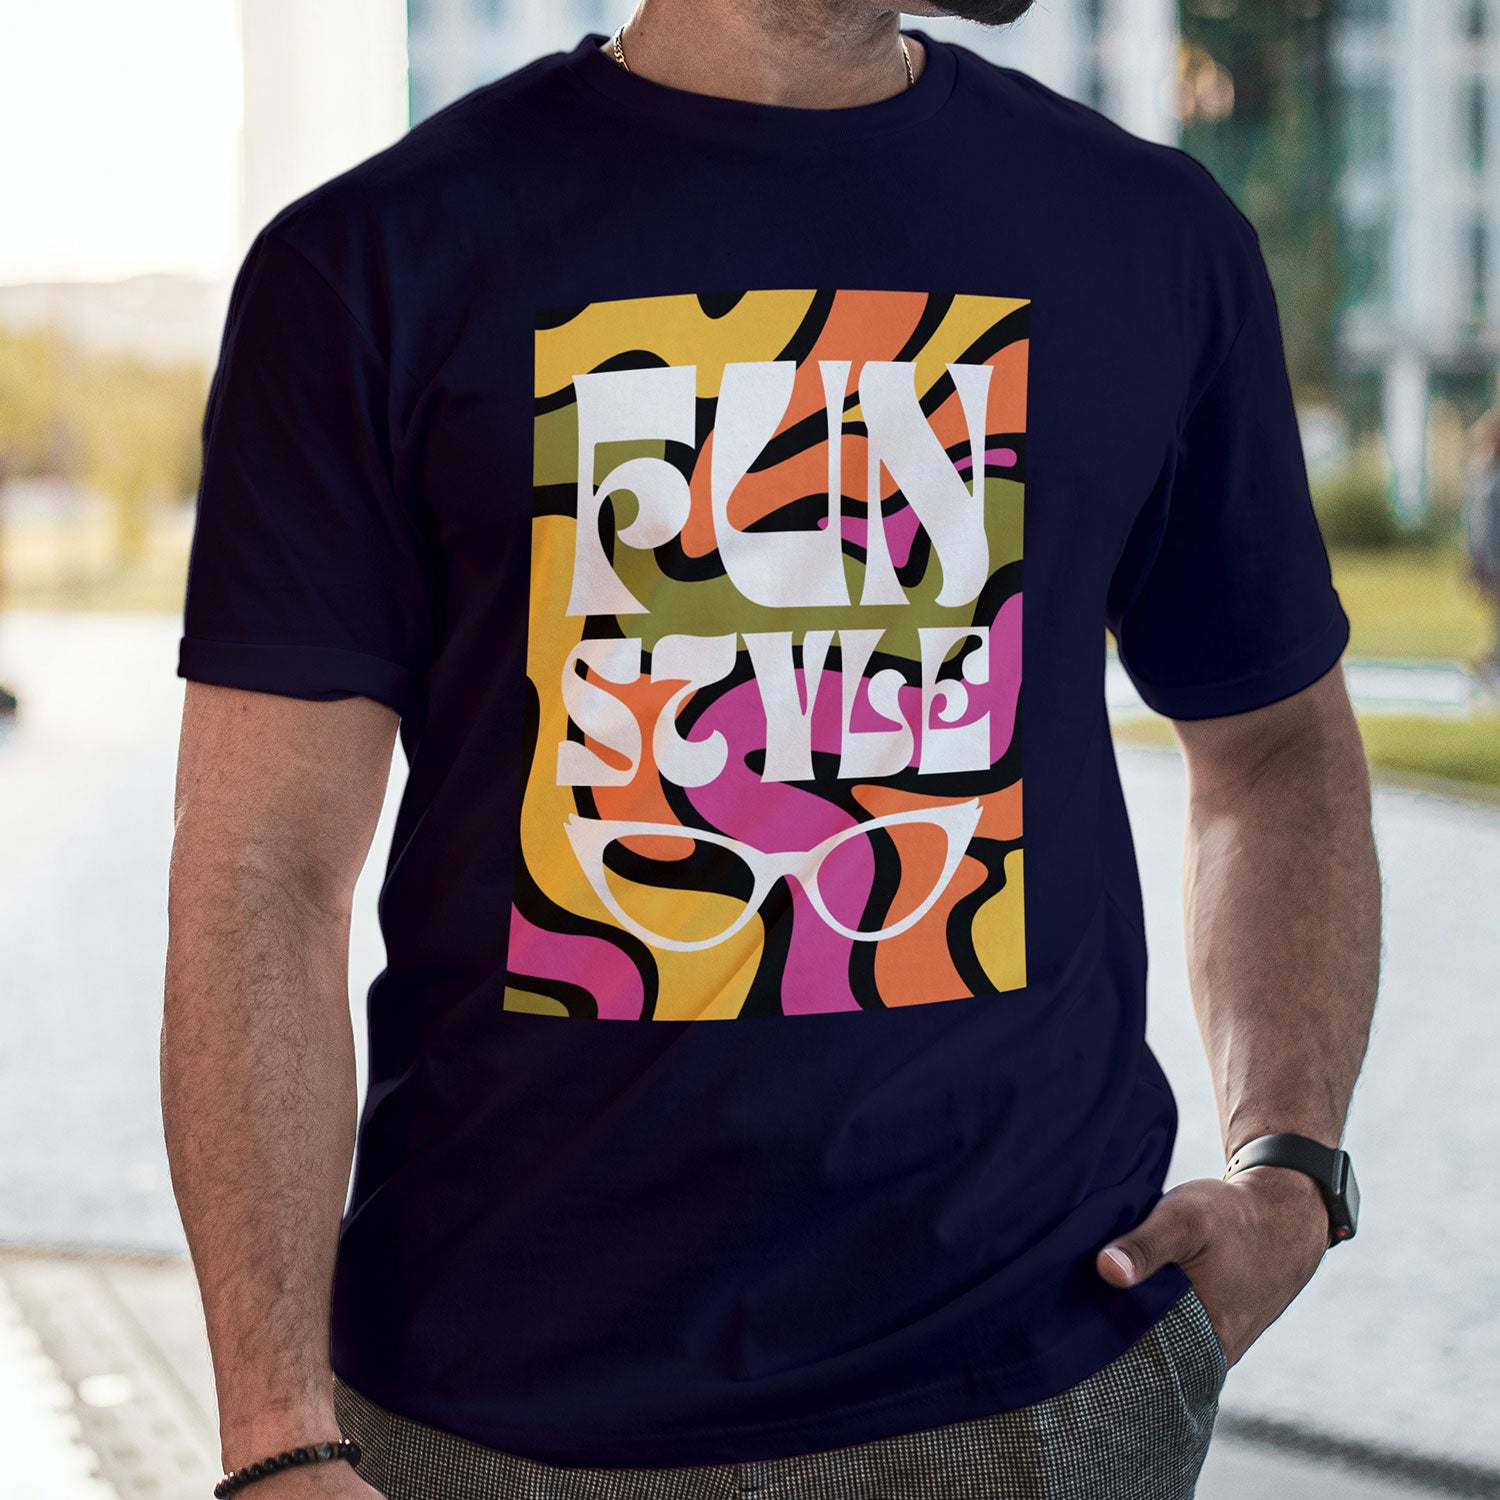 Fun Printed T-shirt For Men